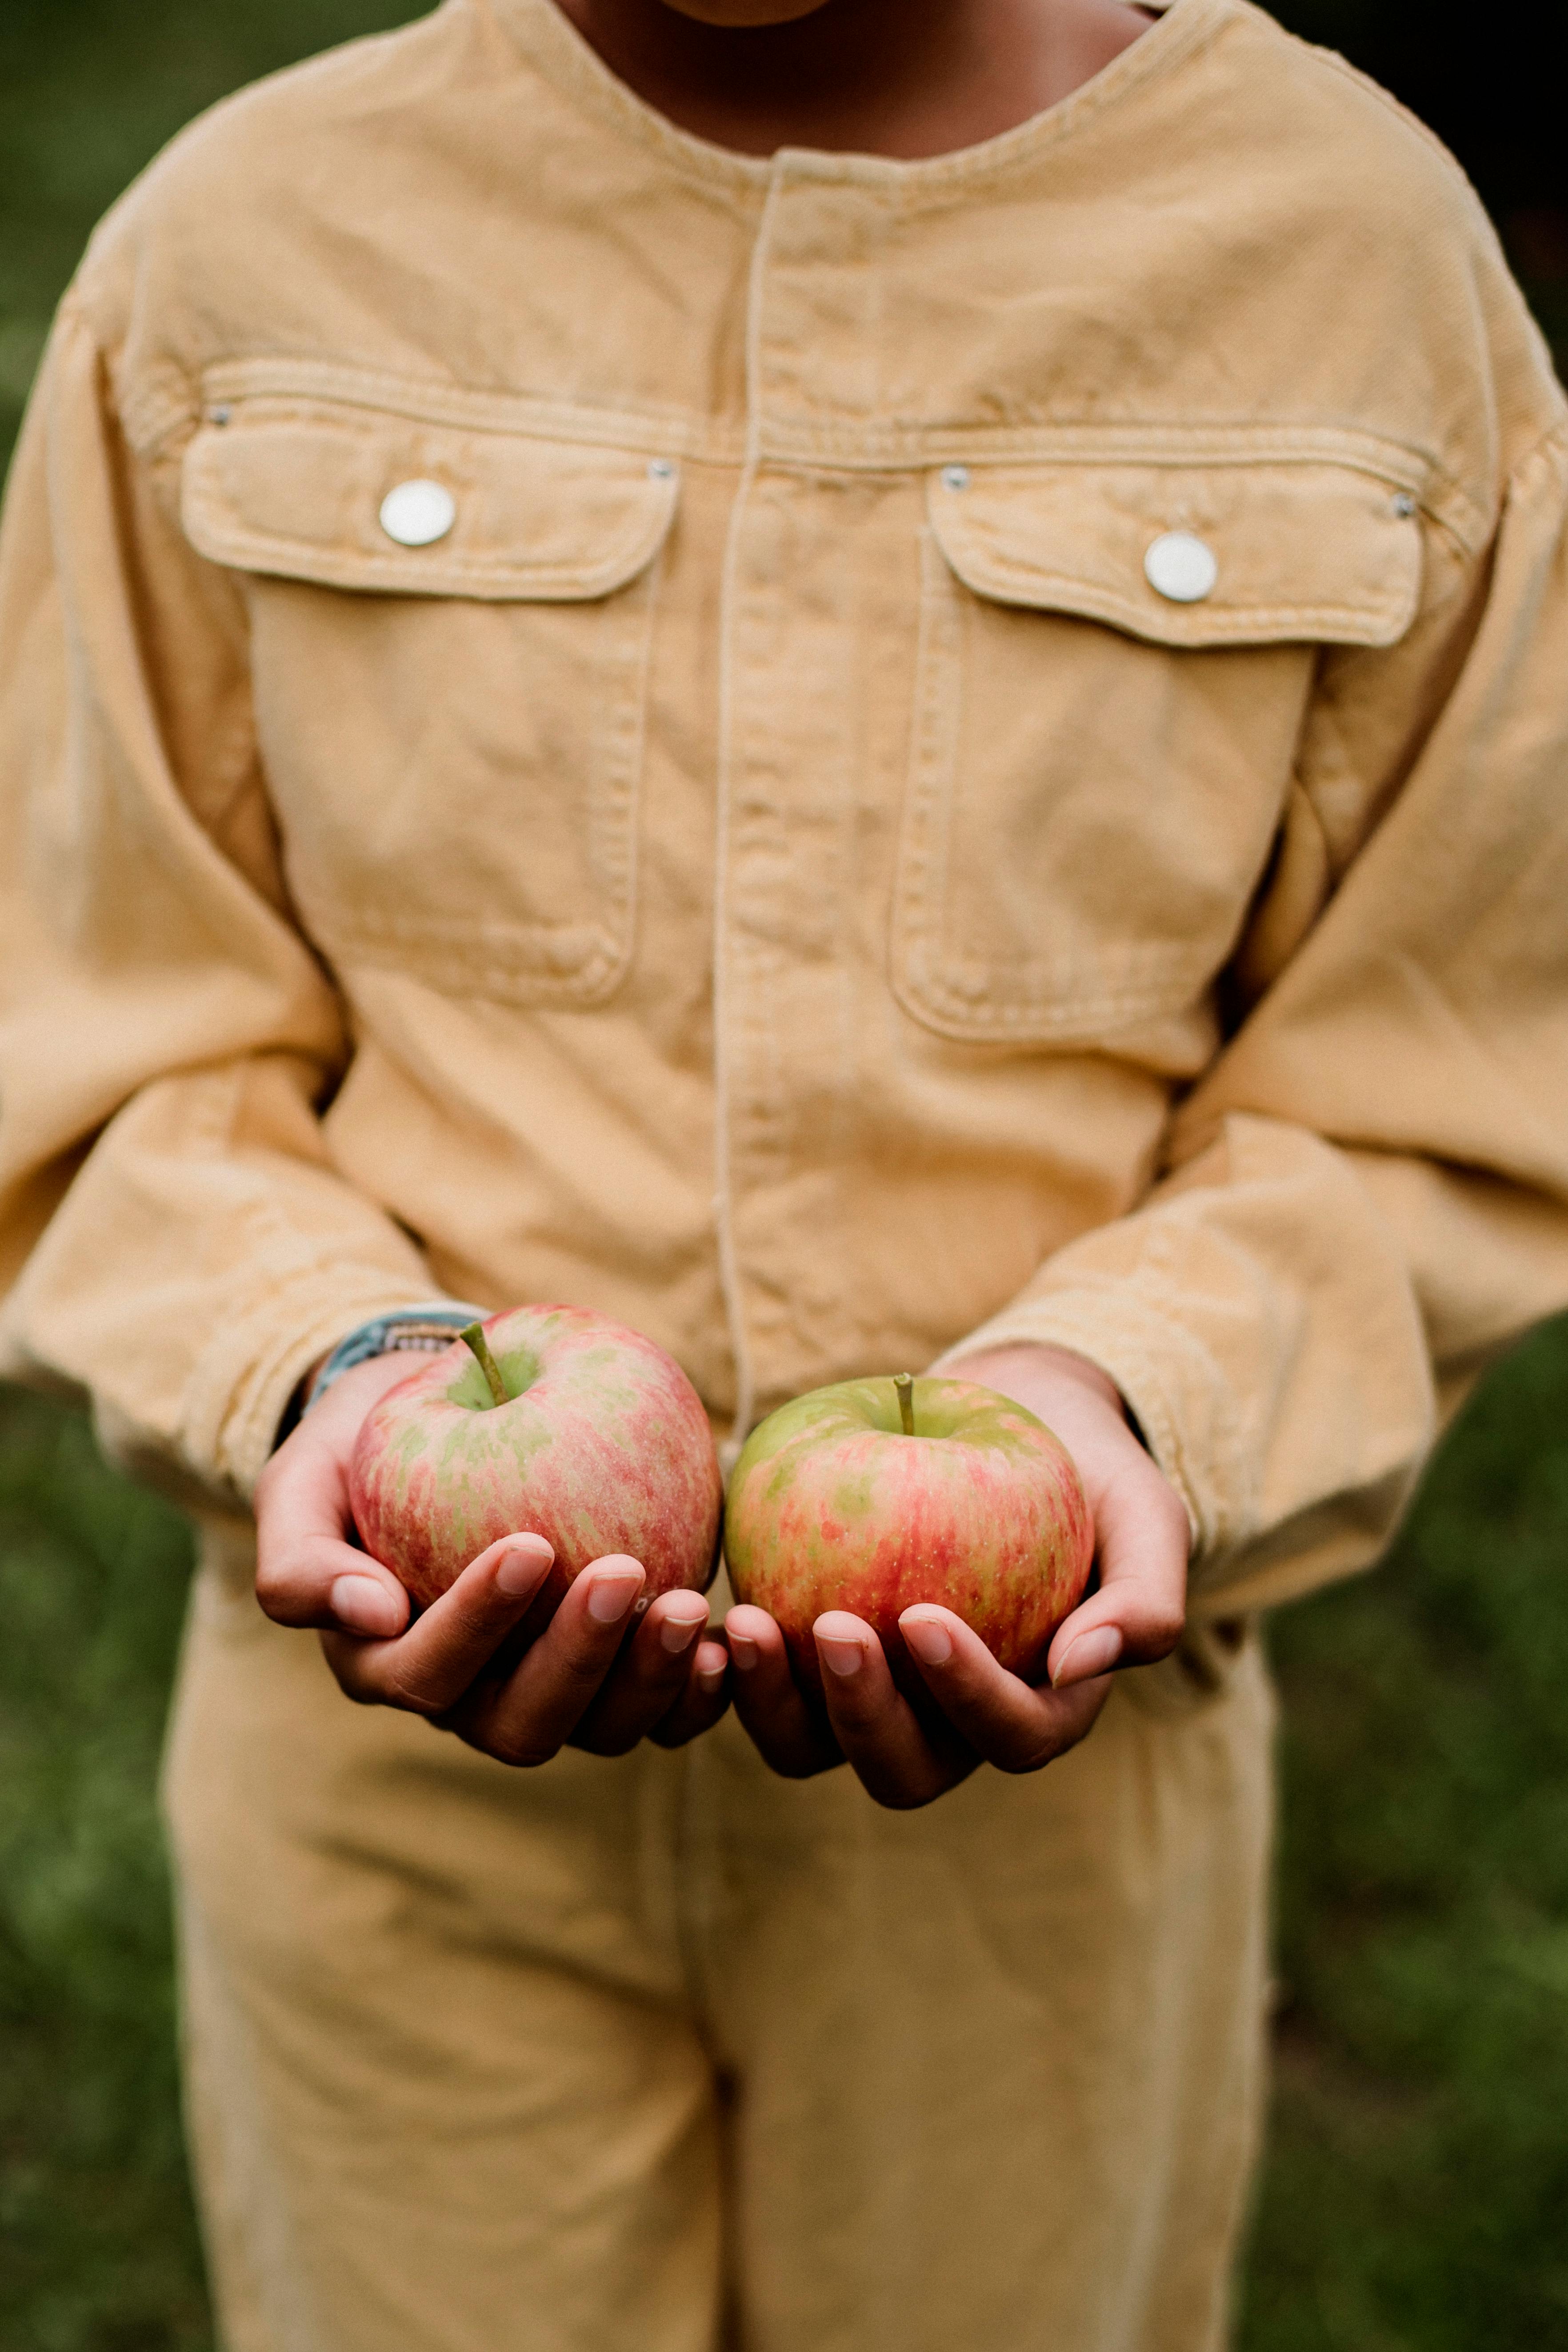 teen girl holding apples in hands in garden